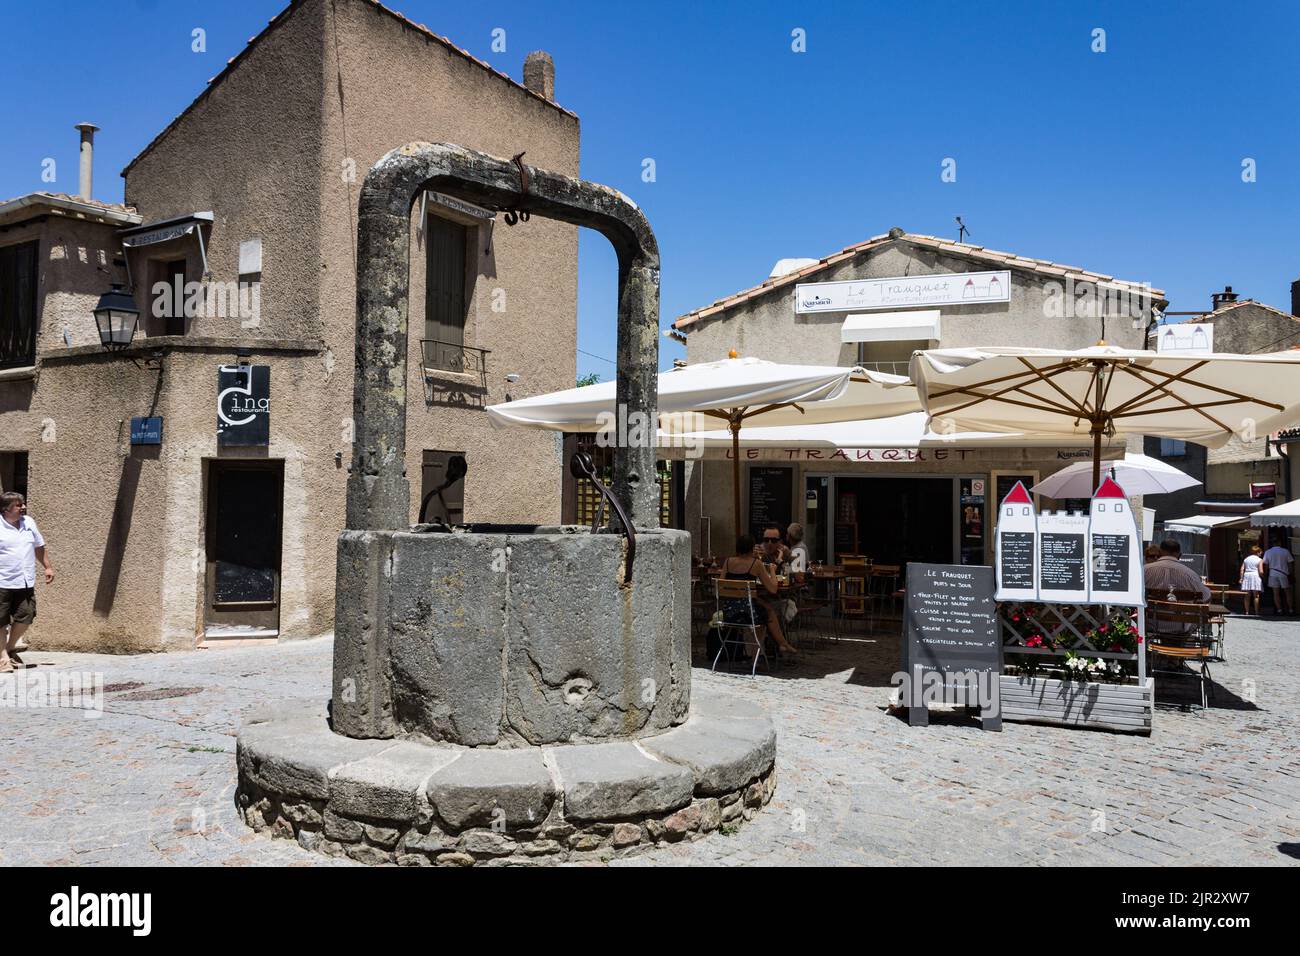 Un puits historique à l'intérieur de la cité médiévale fortifiée, Carcassonne, France Banque D'Images